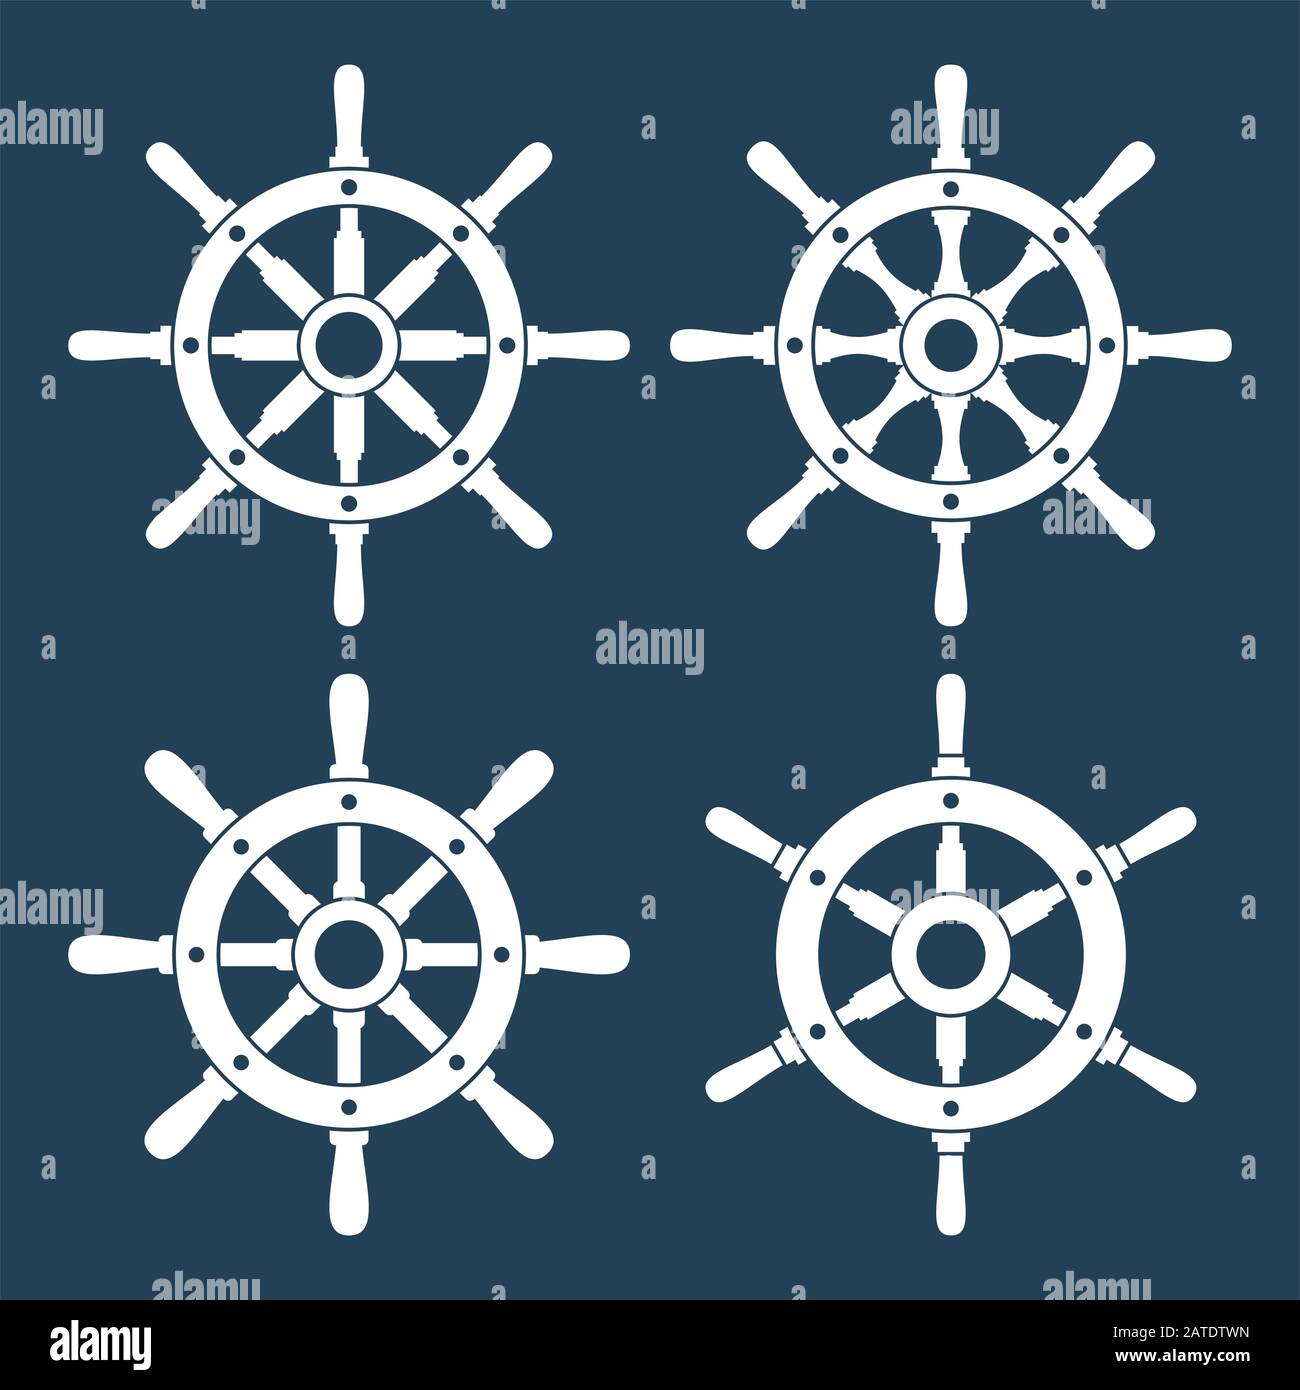 Set di icone vettoriali per il timone della nave. Icone del volante del timone isolate in bianco. Simboli delle icone sul volante. Raccolta di 4 sagome vettoriali per il timone della nave. Lui Illustrazione Vettoriale